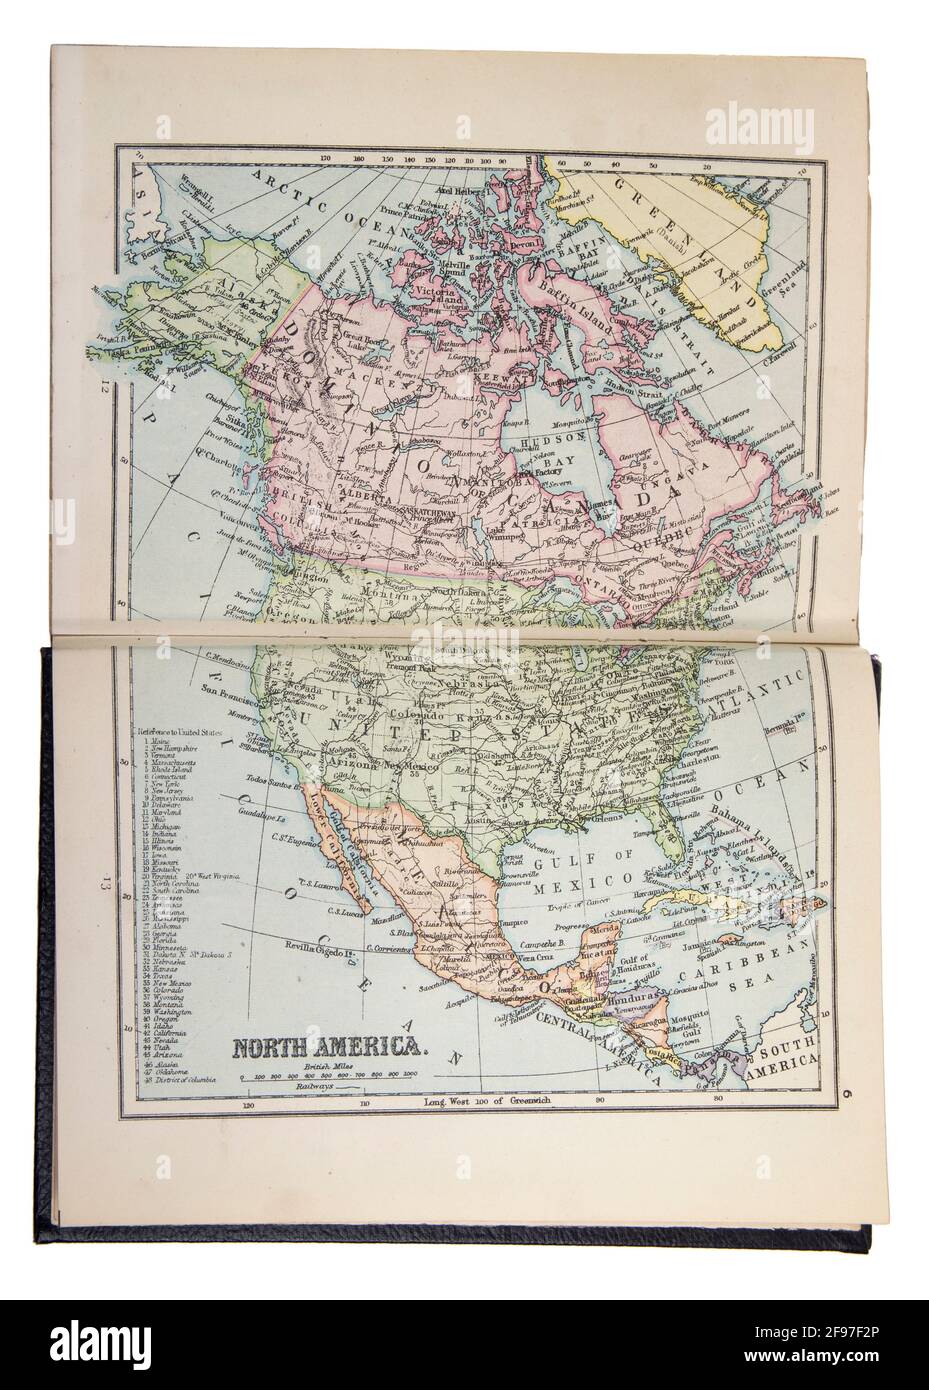 Mappa del Nord America nella Nuova Enciclopedia Standard e Atlante Mondiale, pubblicata da Odhams nel 1932 Foto Stock